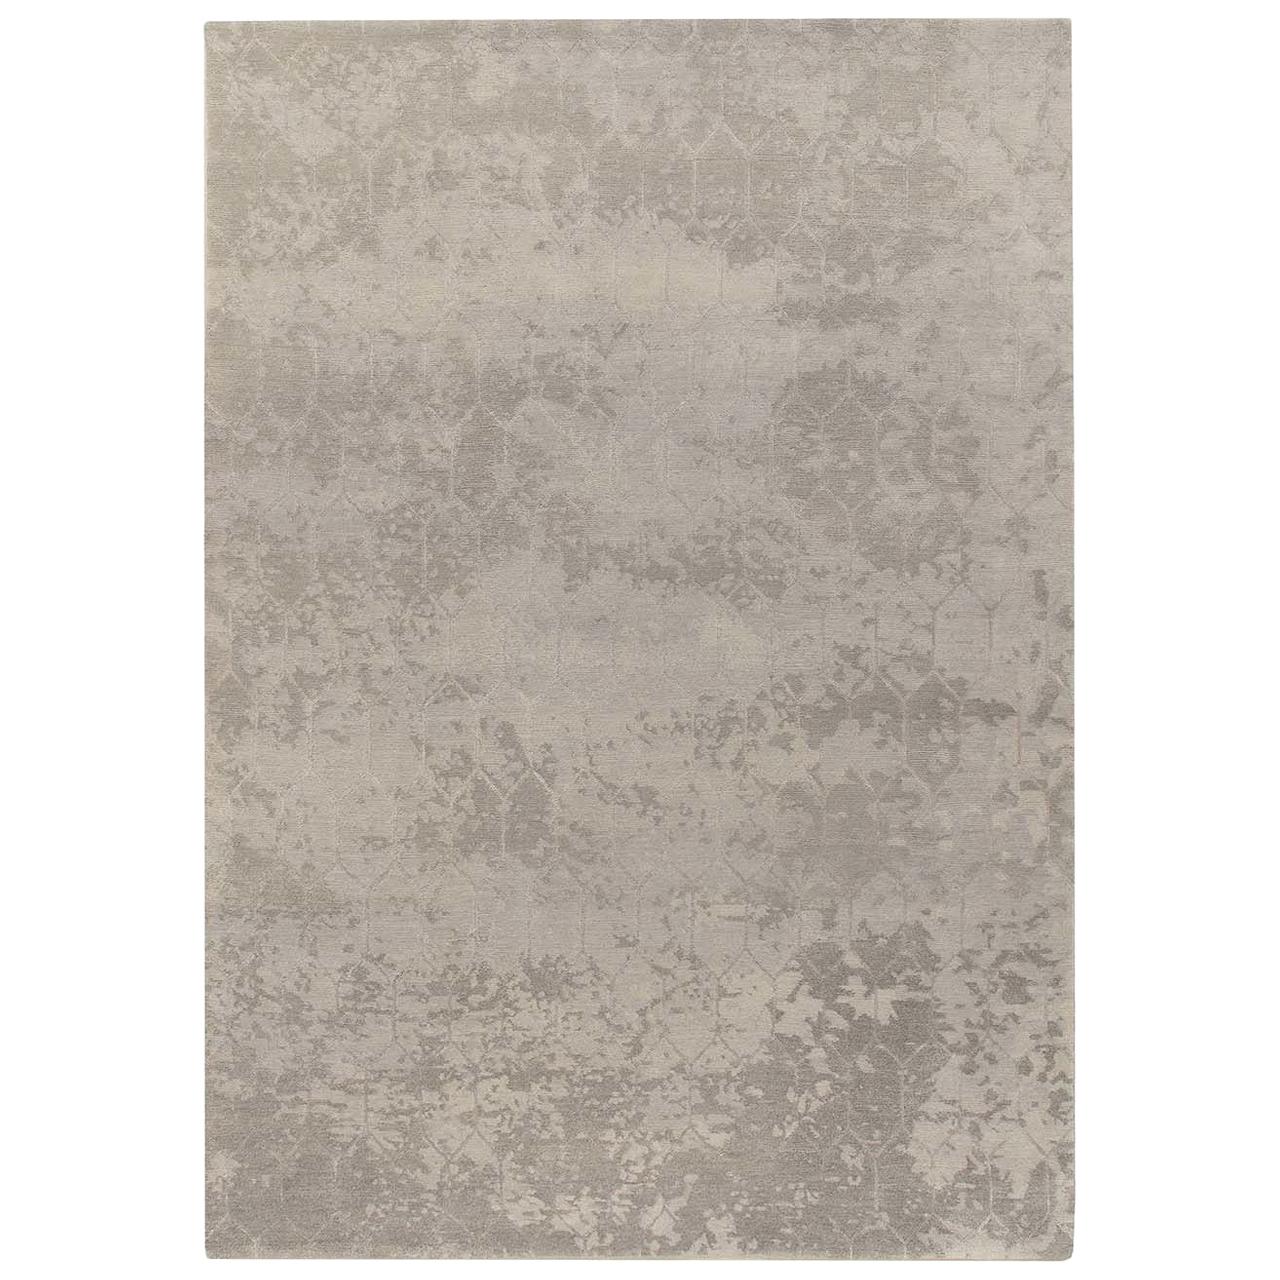 Taranto Gray Carpet by Gio Ponti